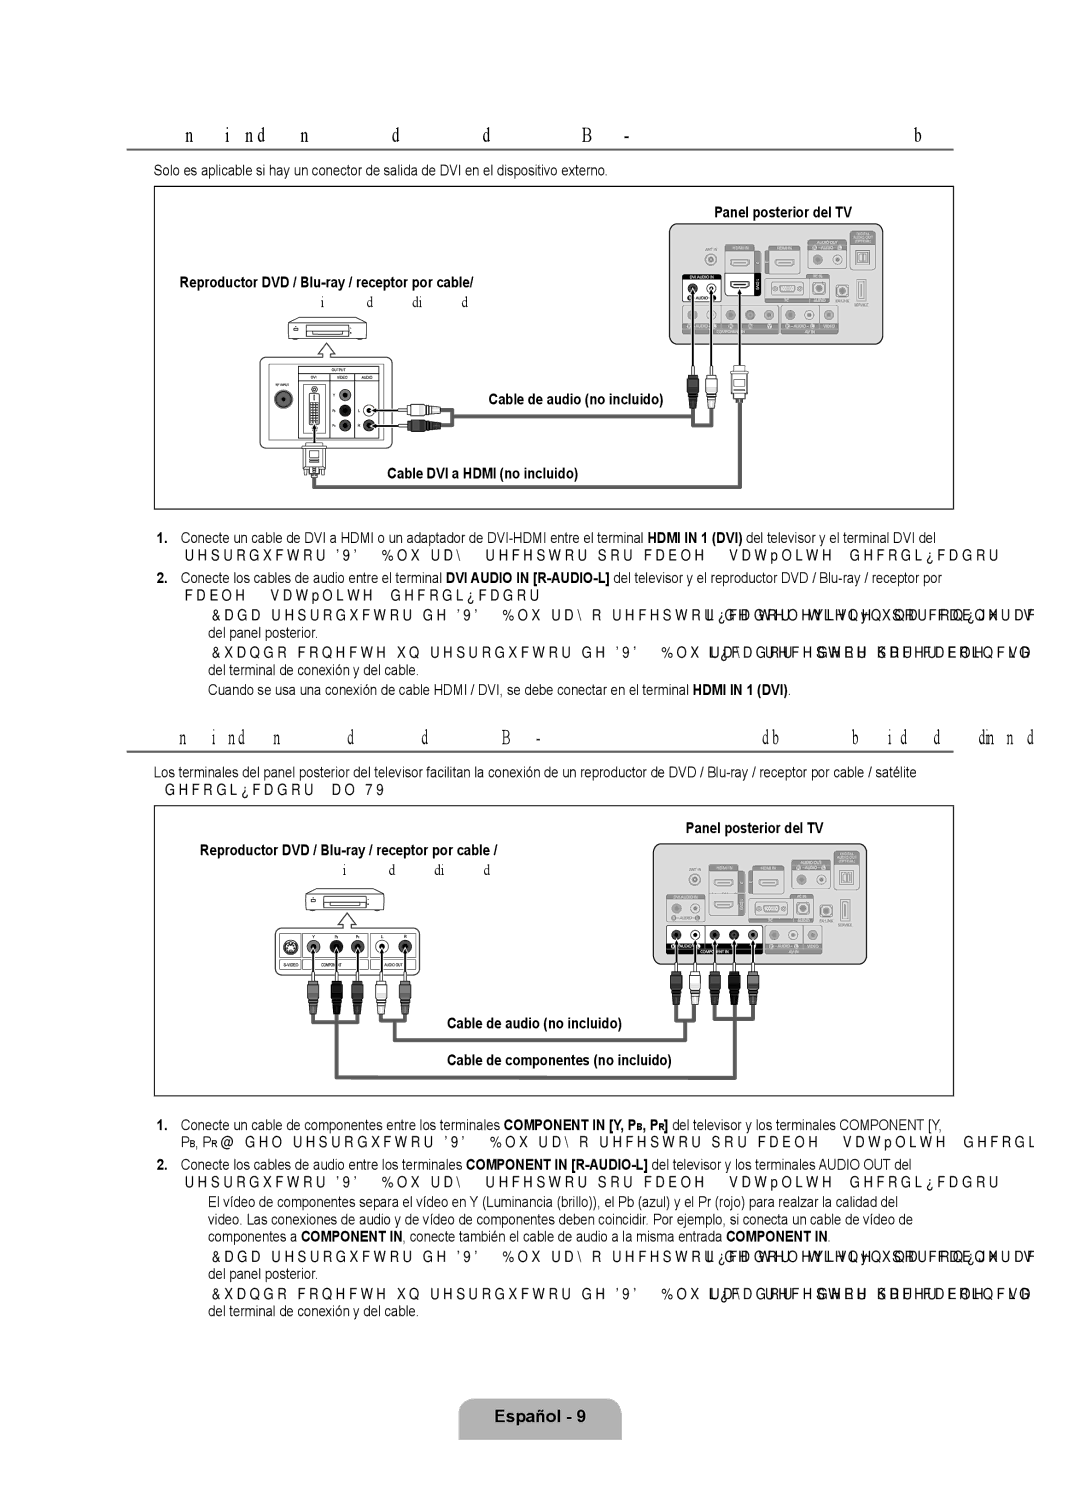 Samsung LN52B530, LN46B530, LN40B530, LN32B530, LN37B530 user manual Español  